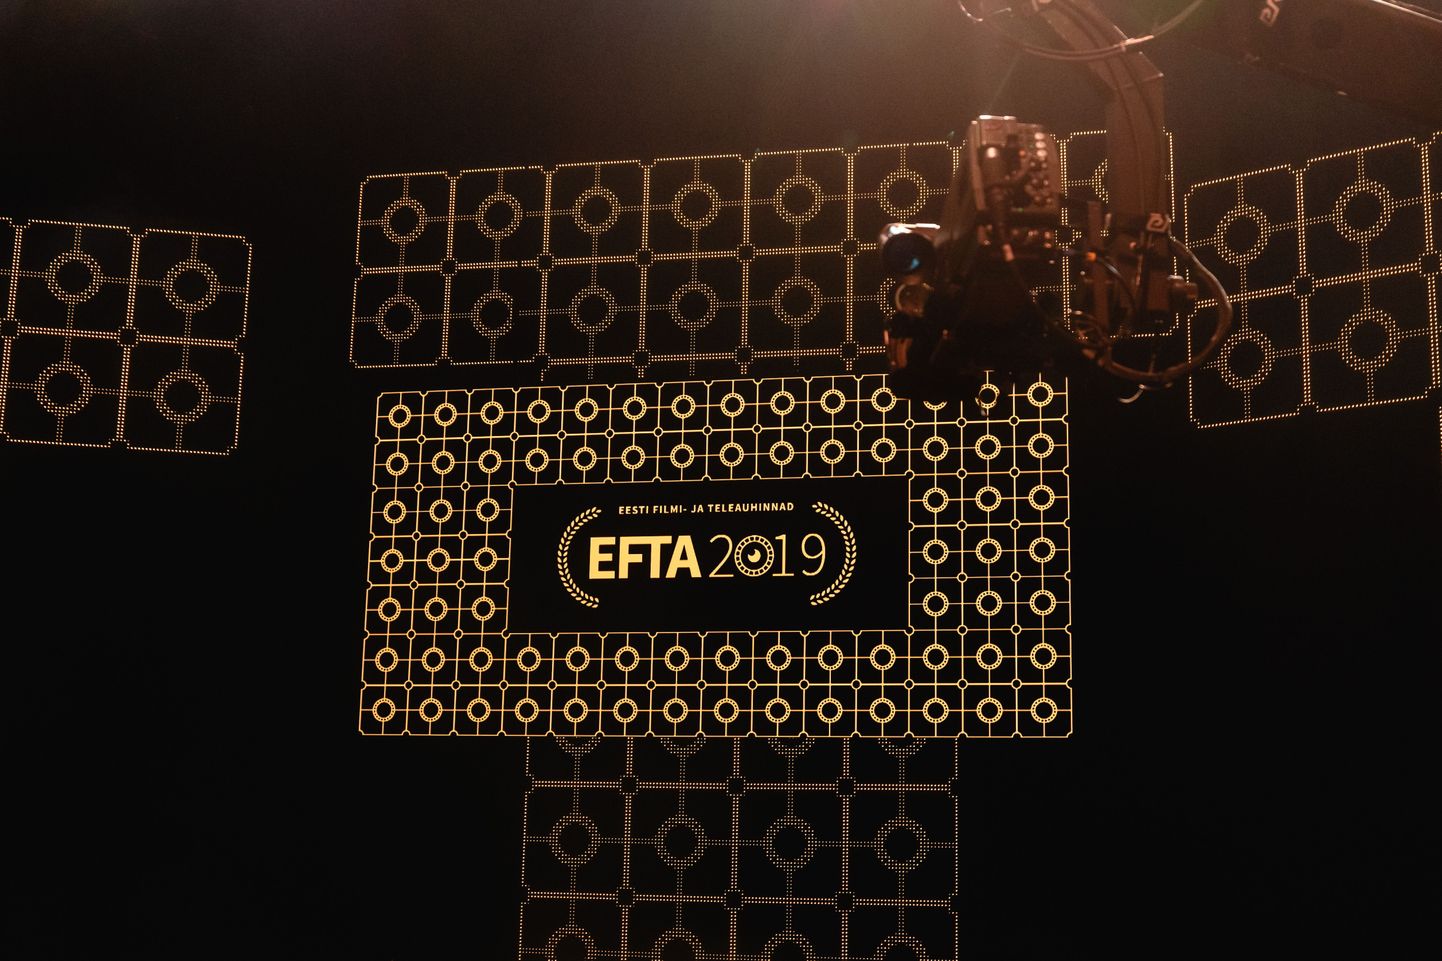 EFTA gala 2019.